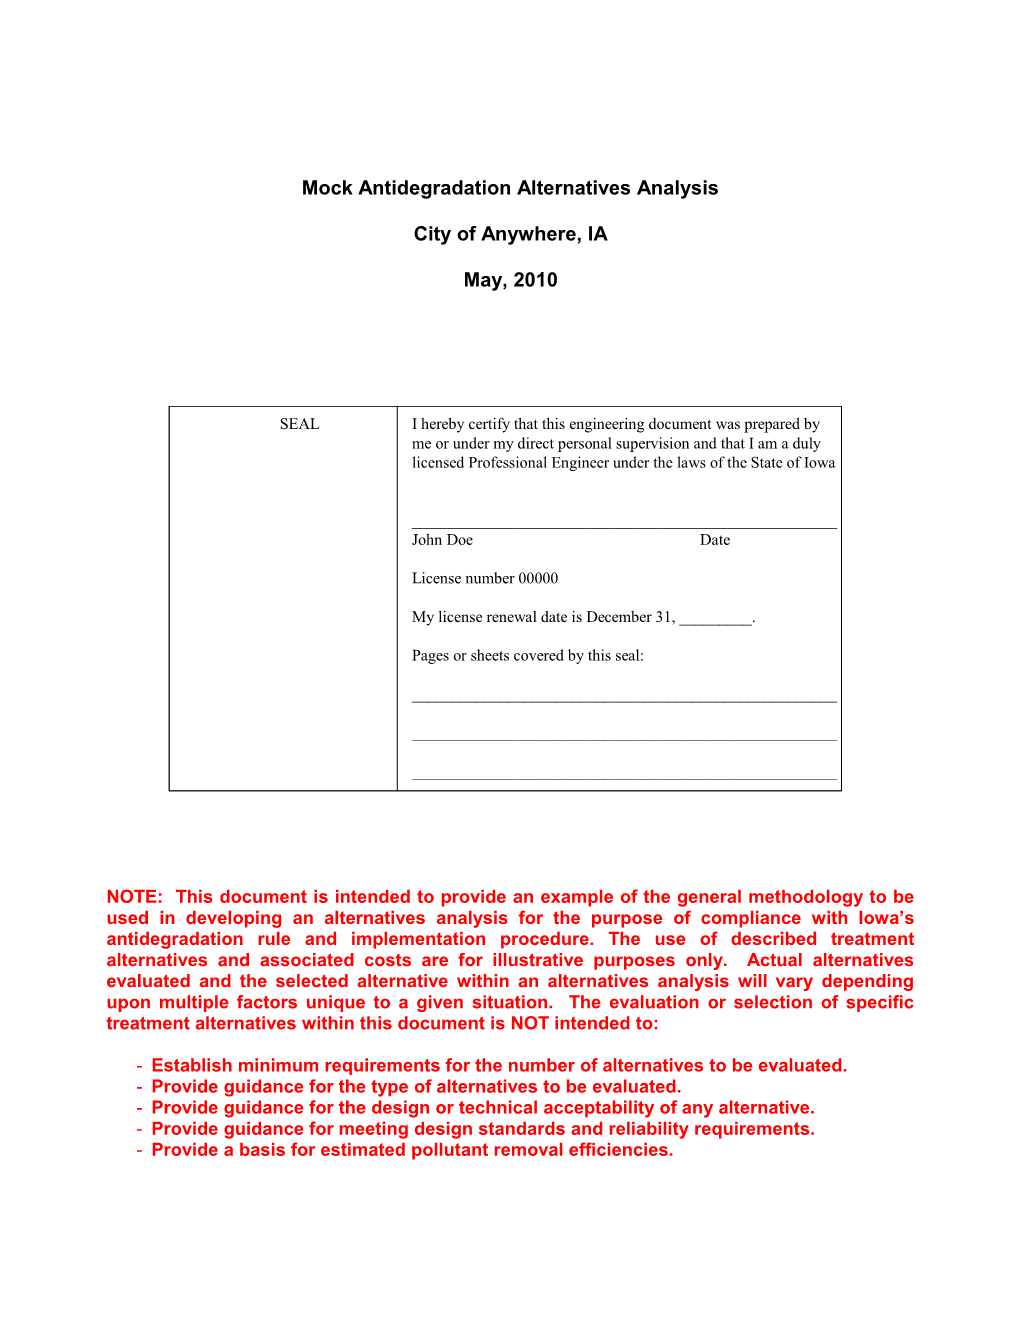 Antideg Alternatives Analysis Example (Existing Municipal POTW)